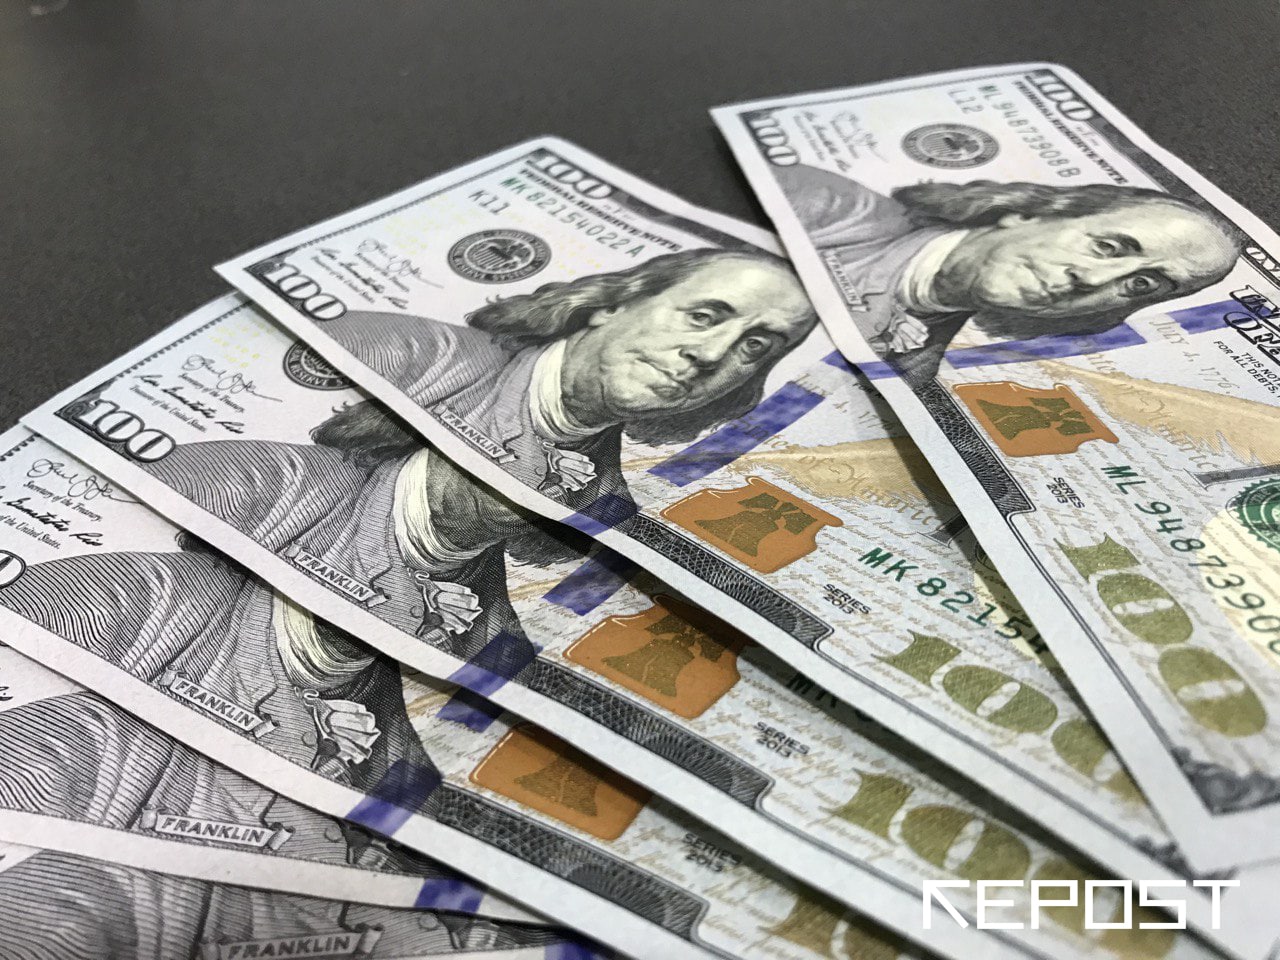 Курс доллара в Узбекистане растет четвертый день подряд